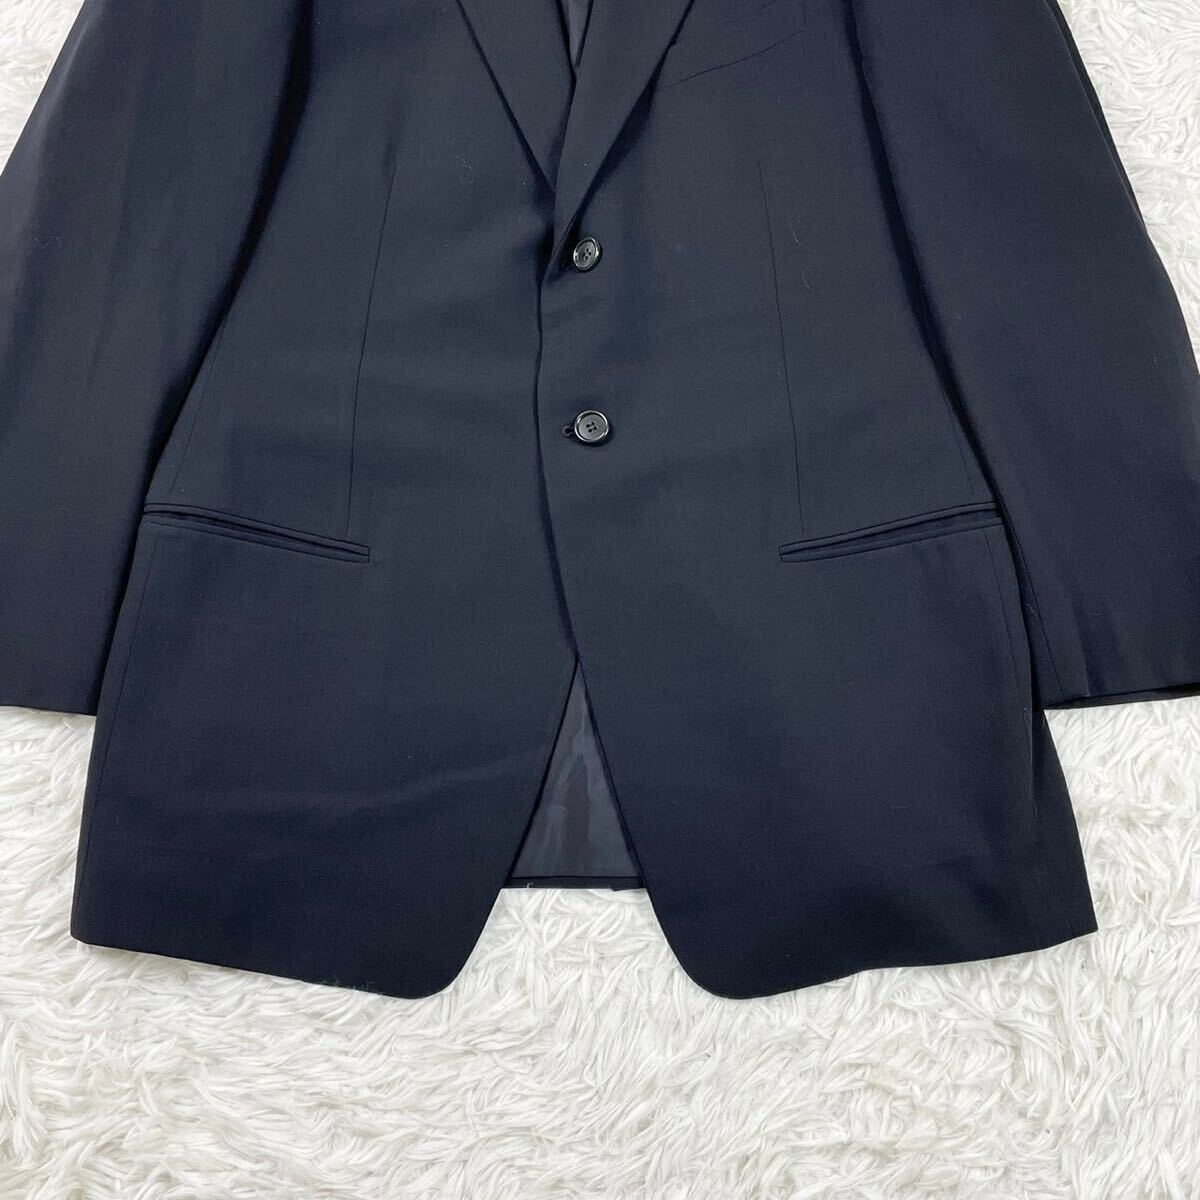  превосходный товар редкий размер XLjoru geo Armani tailored jacket BORGO21 действующий товар темно-синий темно-синий высший класс GIORGIO ARMANI формальный чёрный бирка 